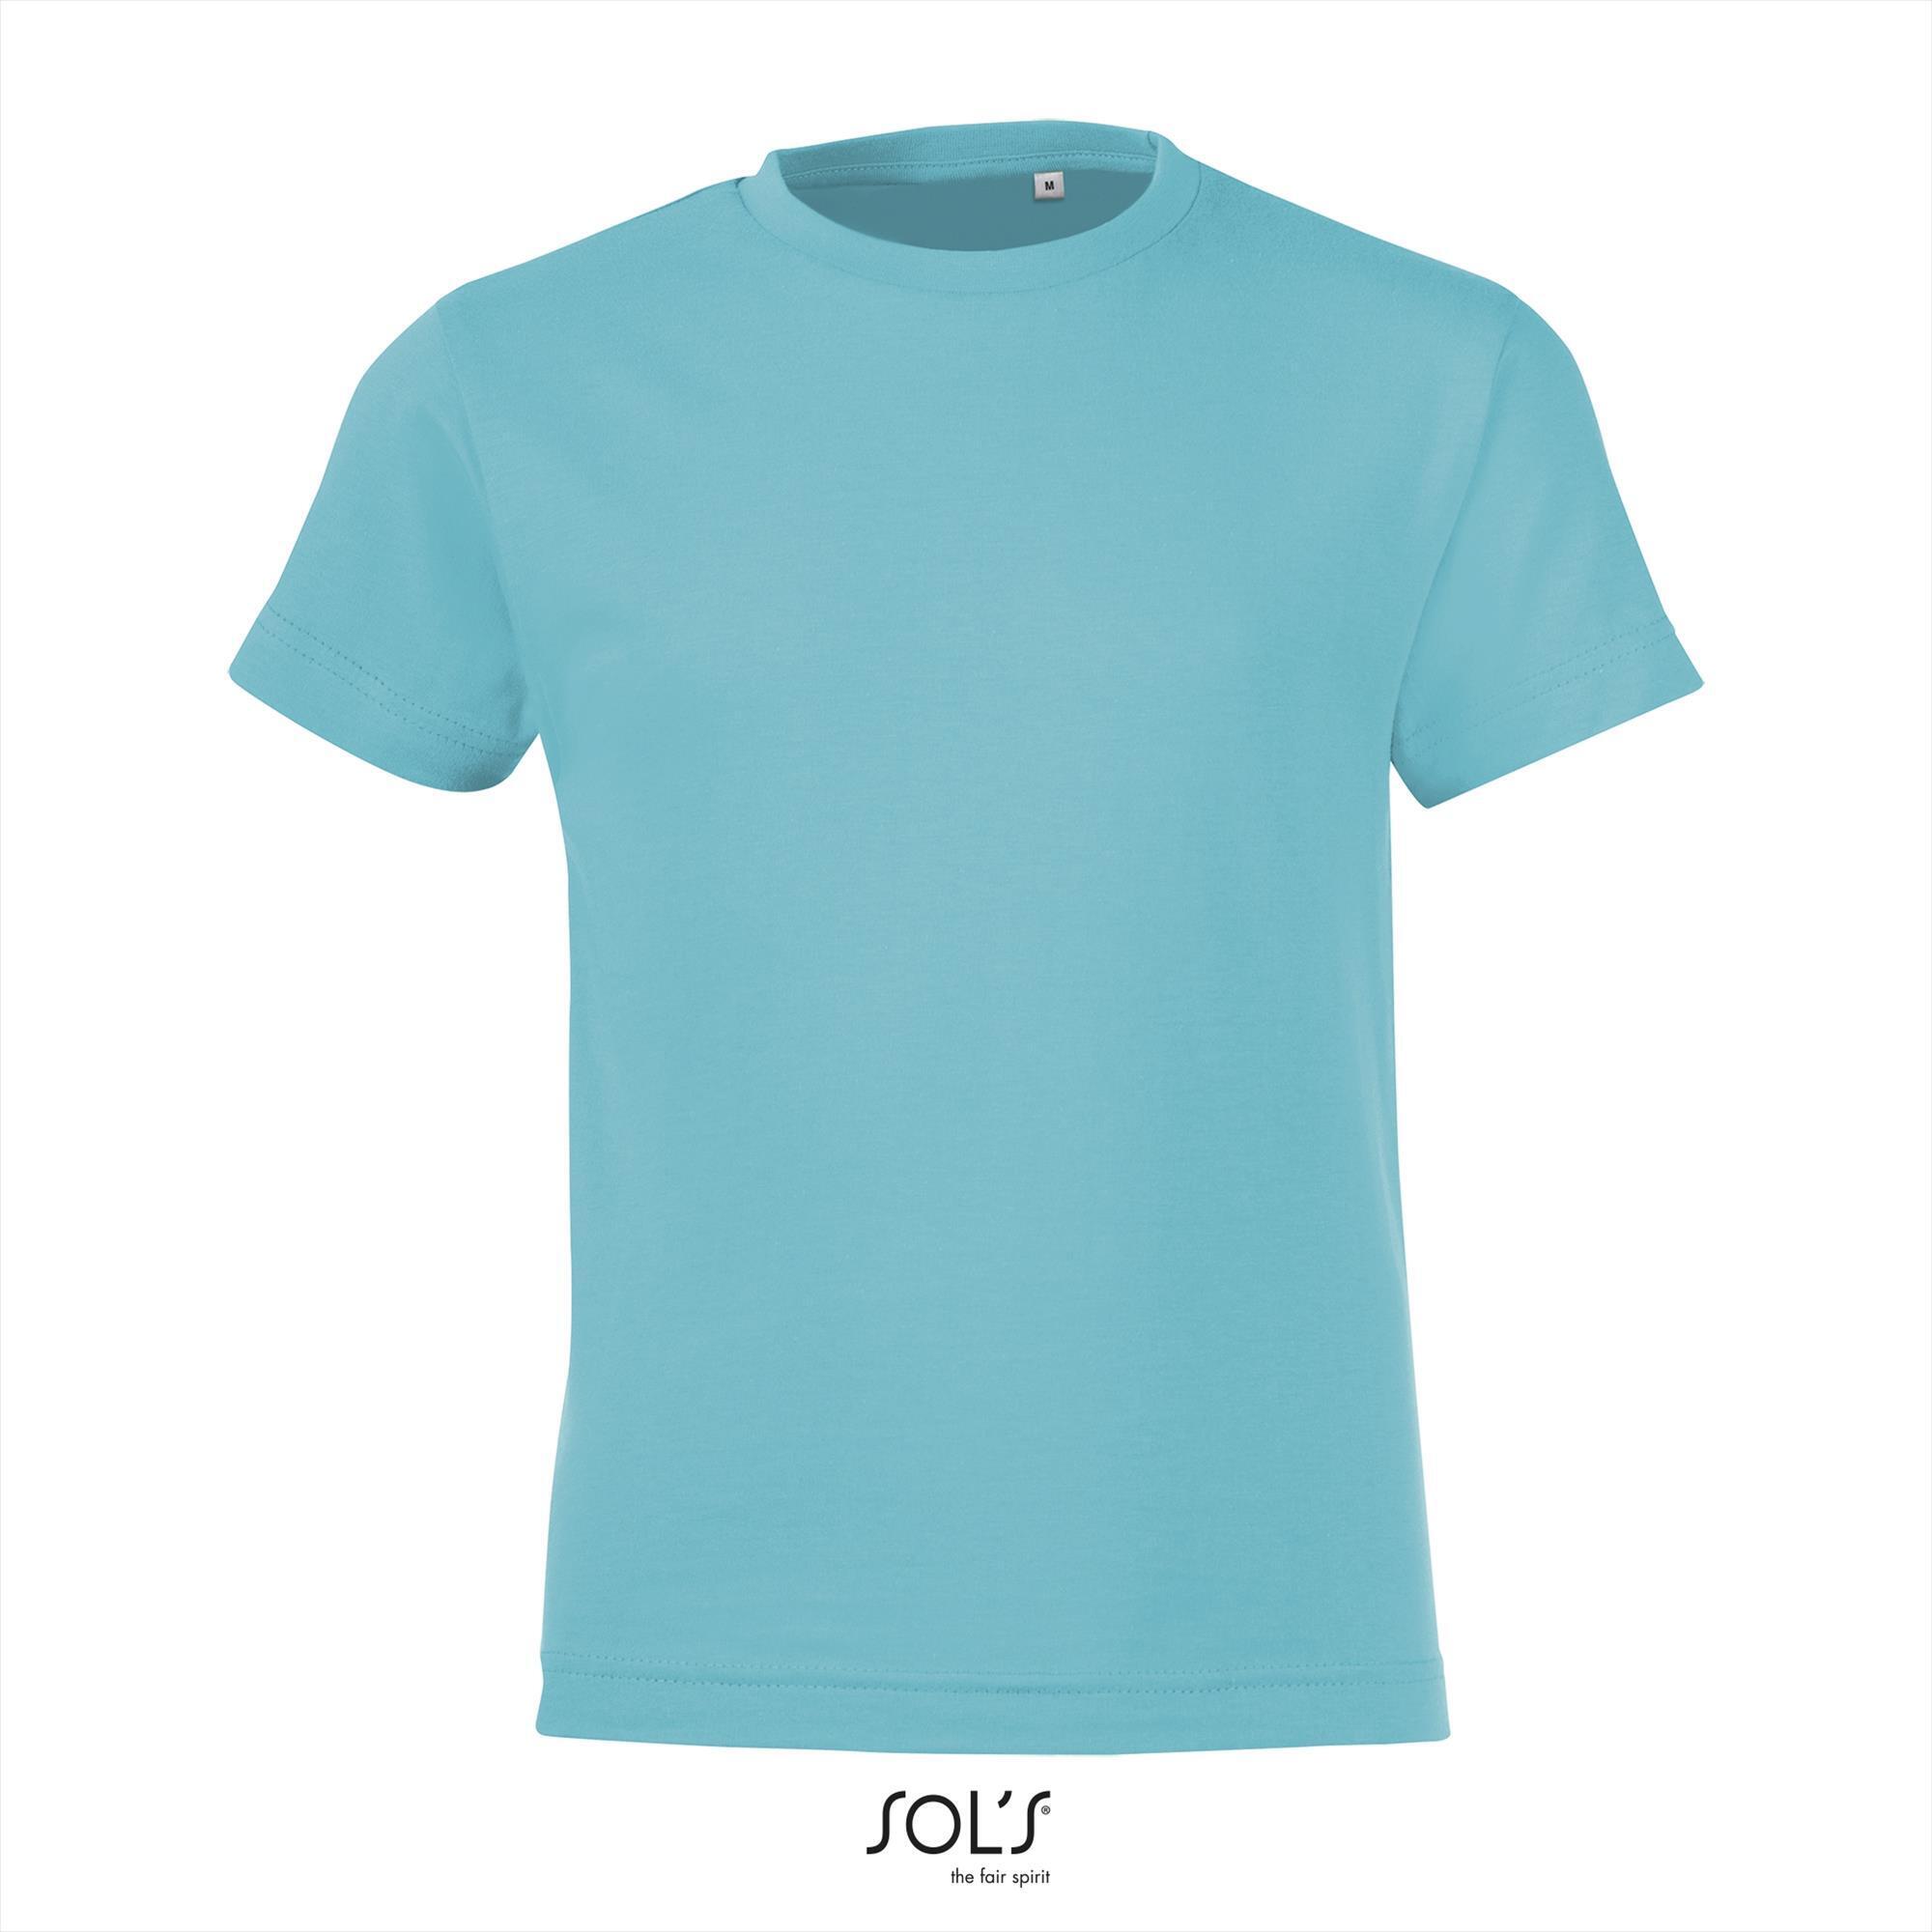 Kinder shirt atoll blauw Sol's 150 Regent fit